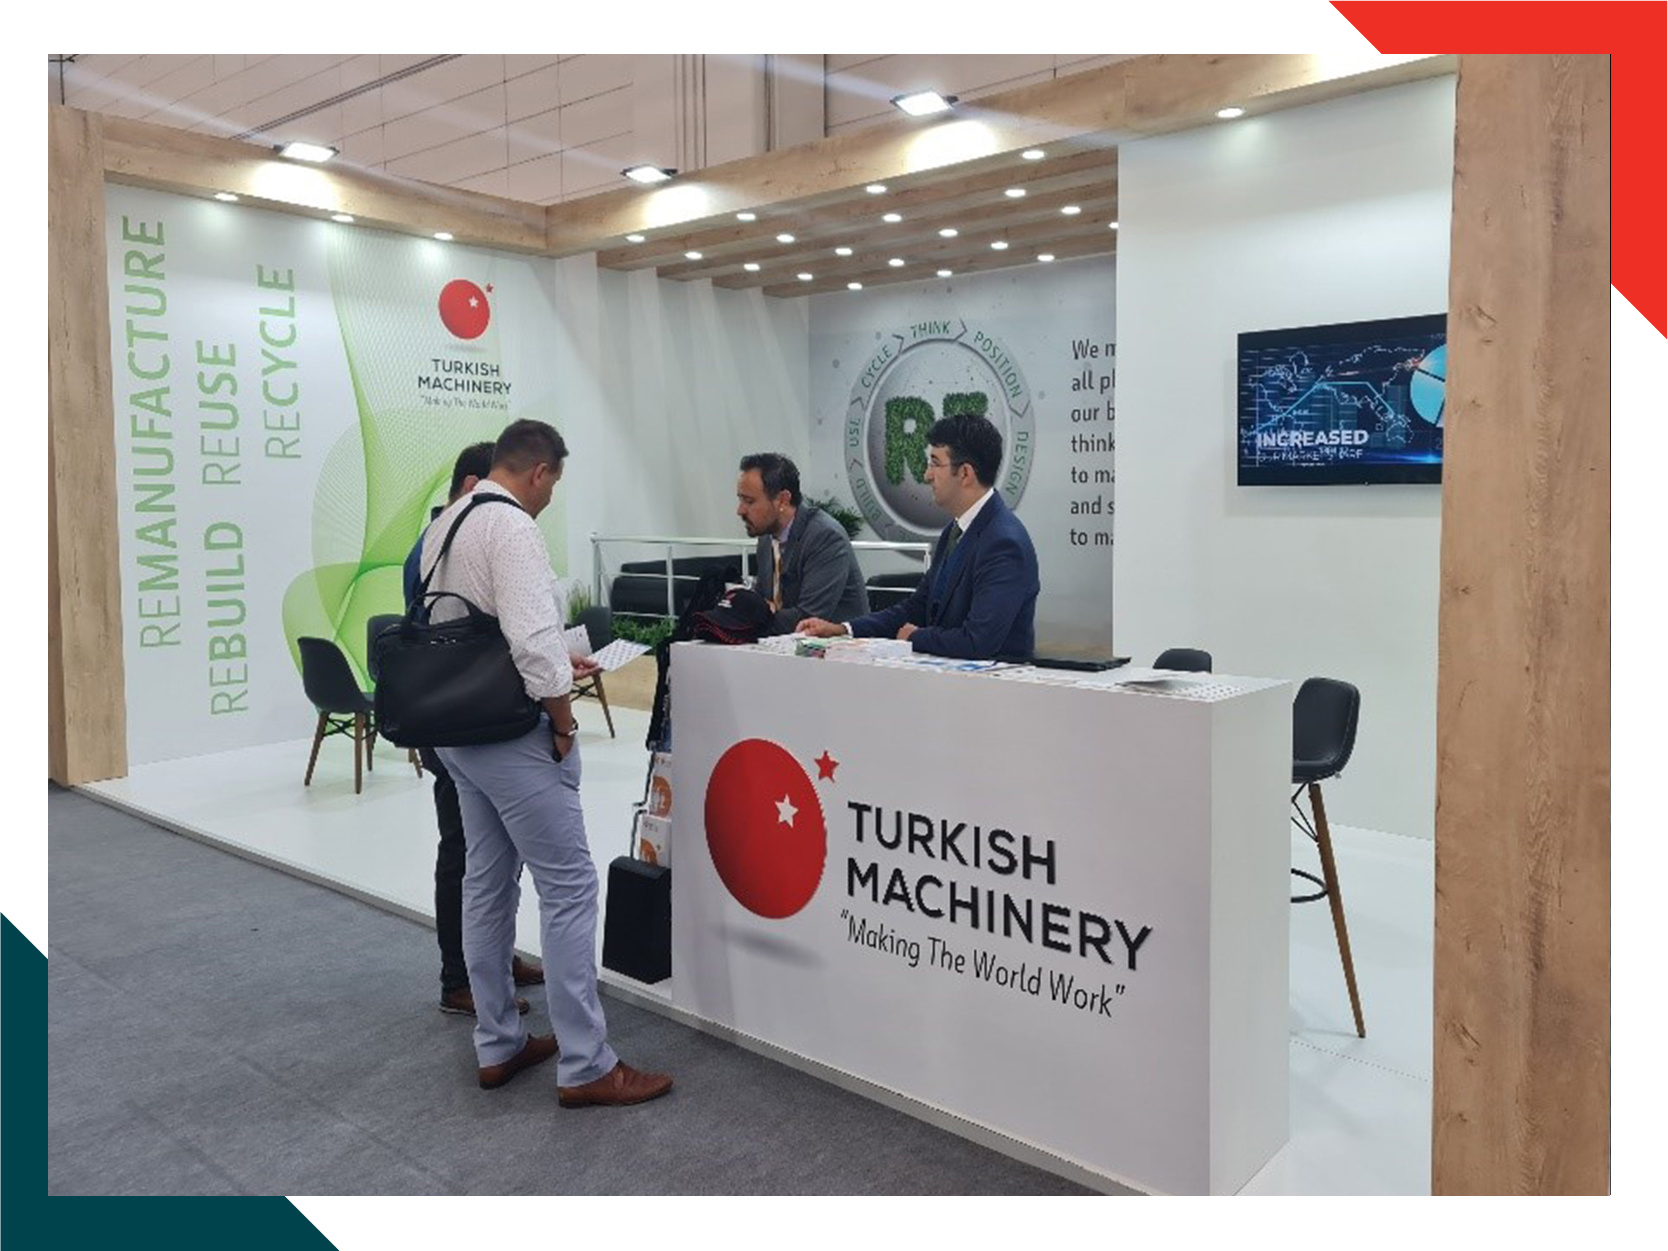 Turkish Machinery has attended ACHEMA 2022